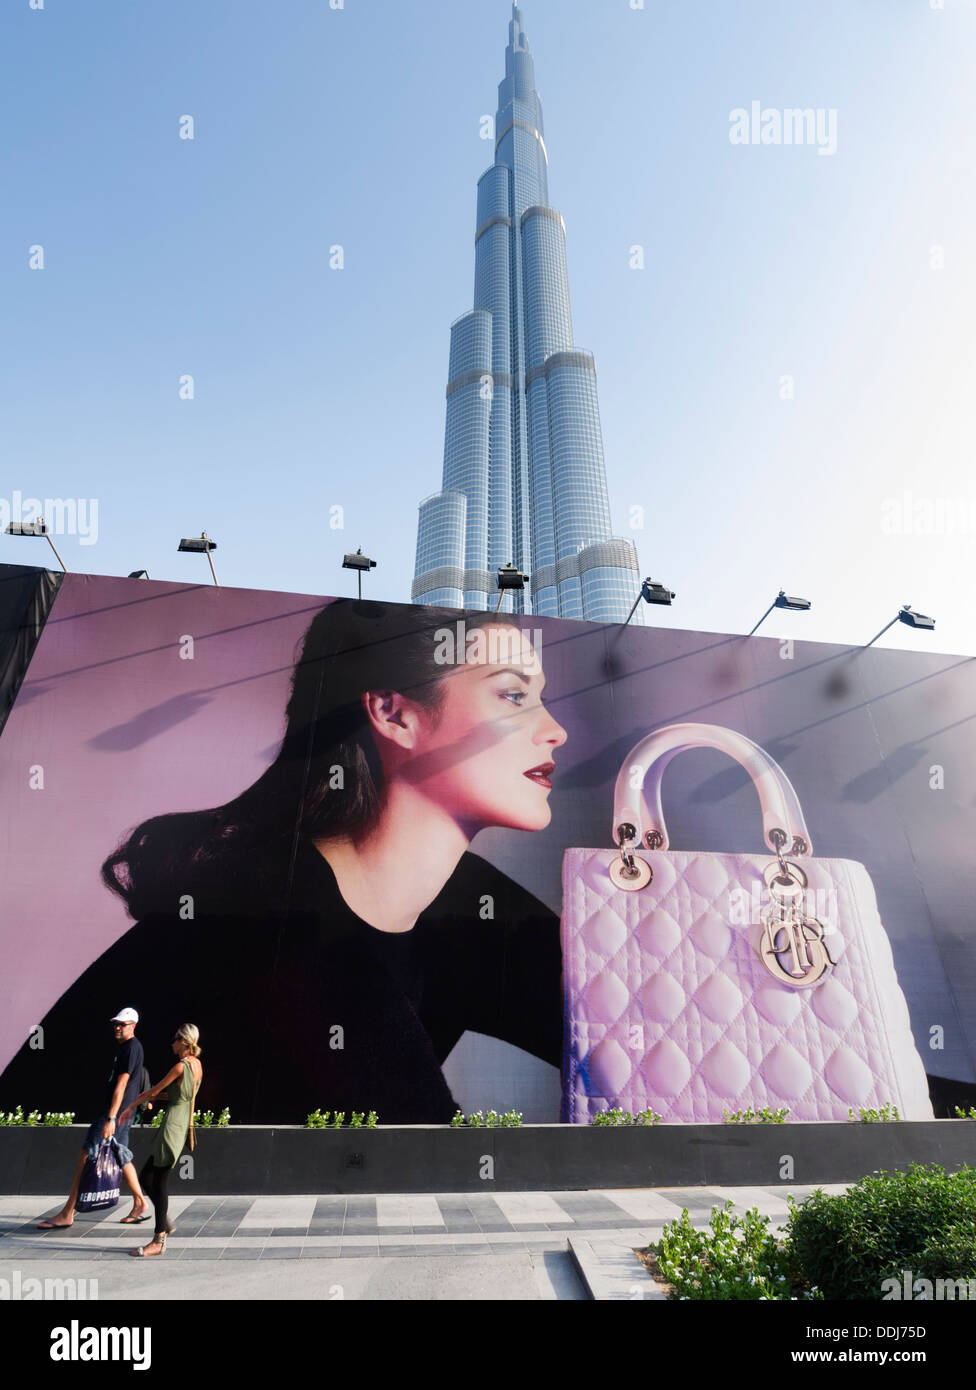 Großes Plakat Werbung Dior Fashion Marke vor Bauarbeiten für Phase 2 Erweiterung der Dubai Mall In Dubai UAE Stockfoto